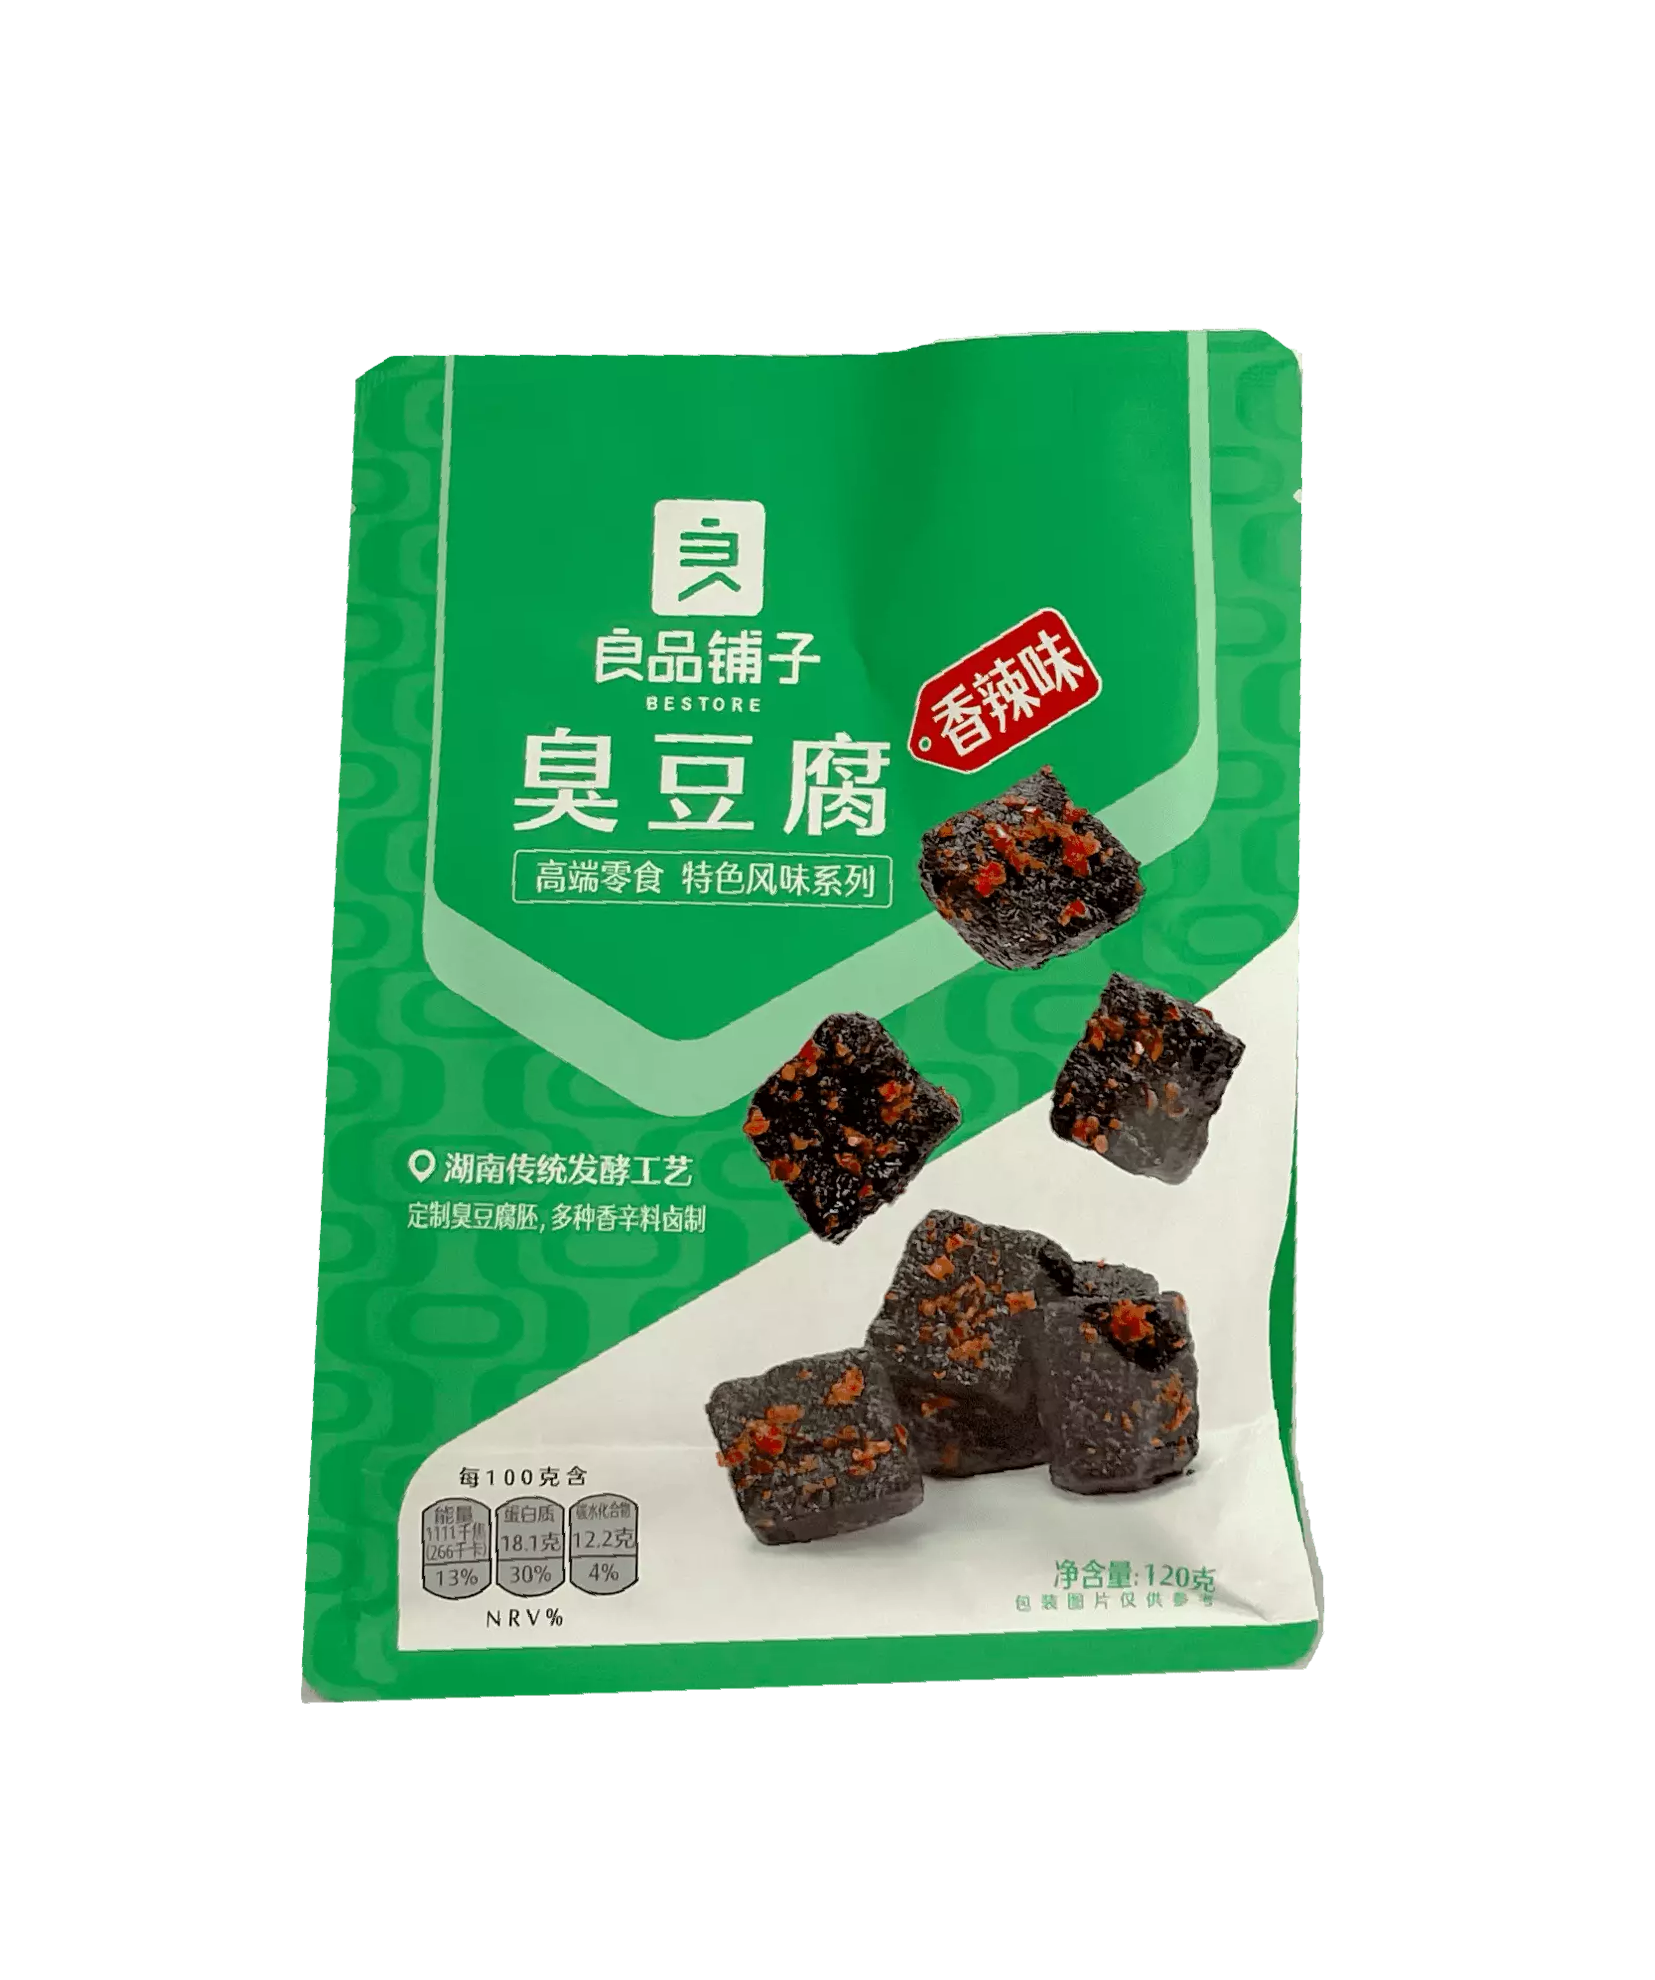 臭豆腐 香辣味 120g 良品铺子 中国